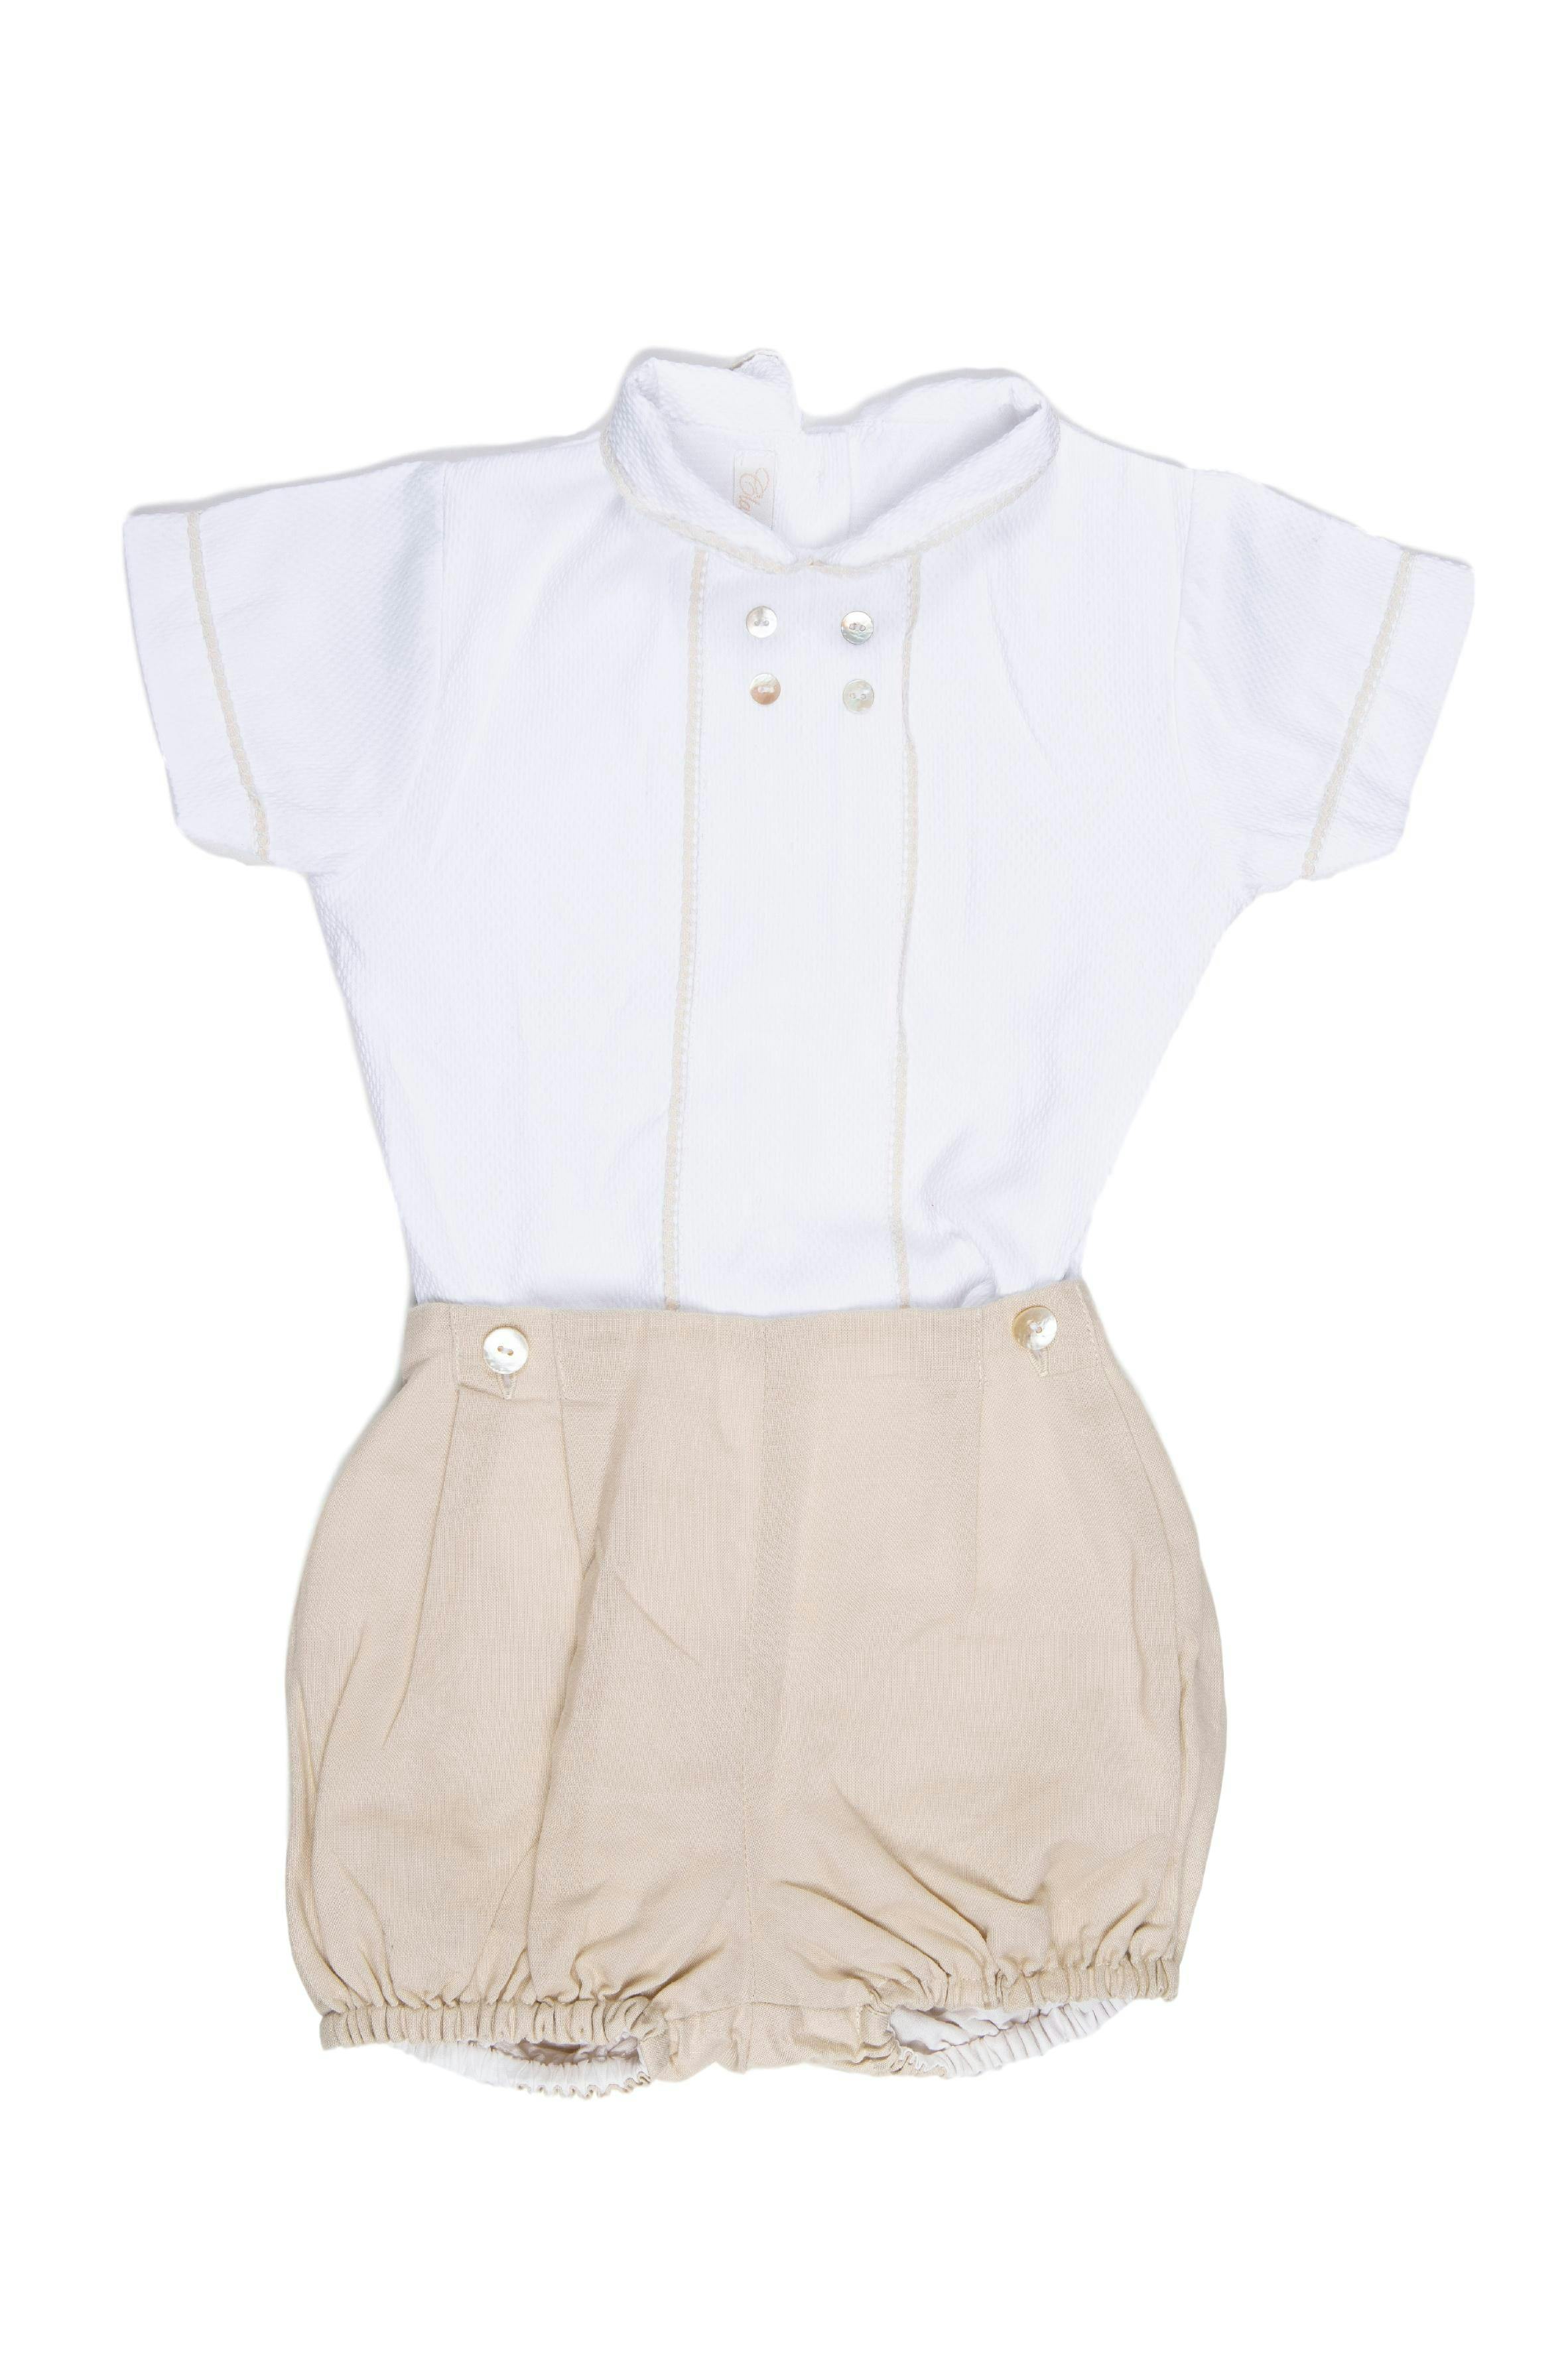 Camisa algodon blanca y short lino beige (la camisa tiene un ligero jalado impercentible a simple vista) - Claudia